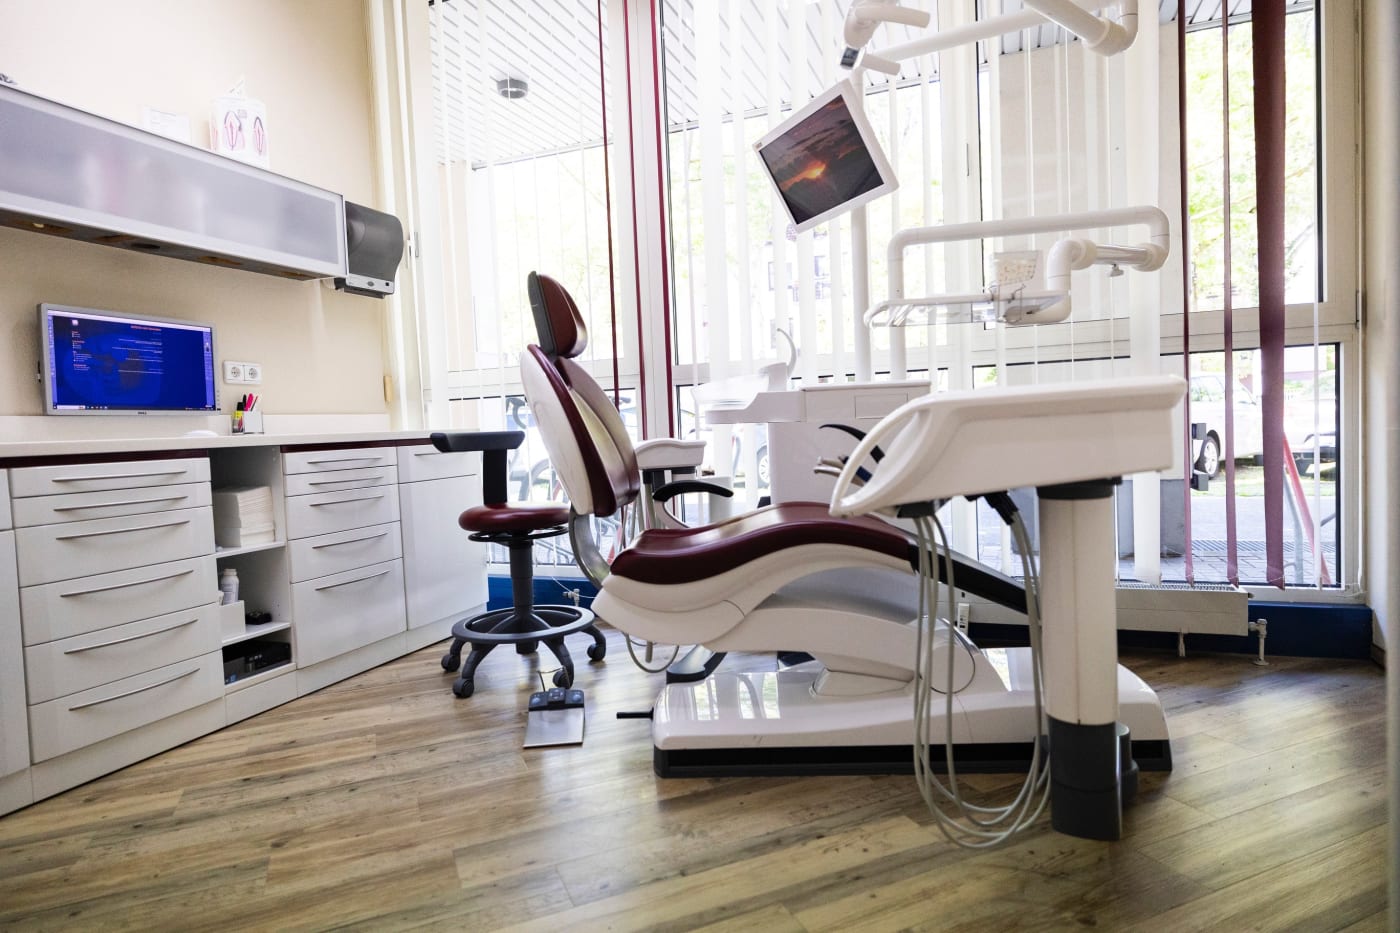 Zimmer mit rot-weißer zahnärztlicher Behandlungseinheit und weißen Schränken